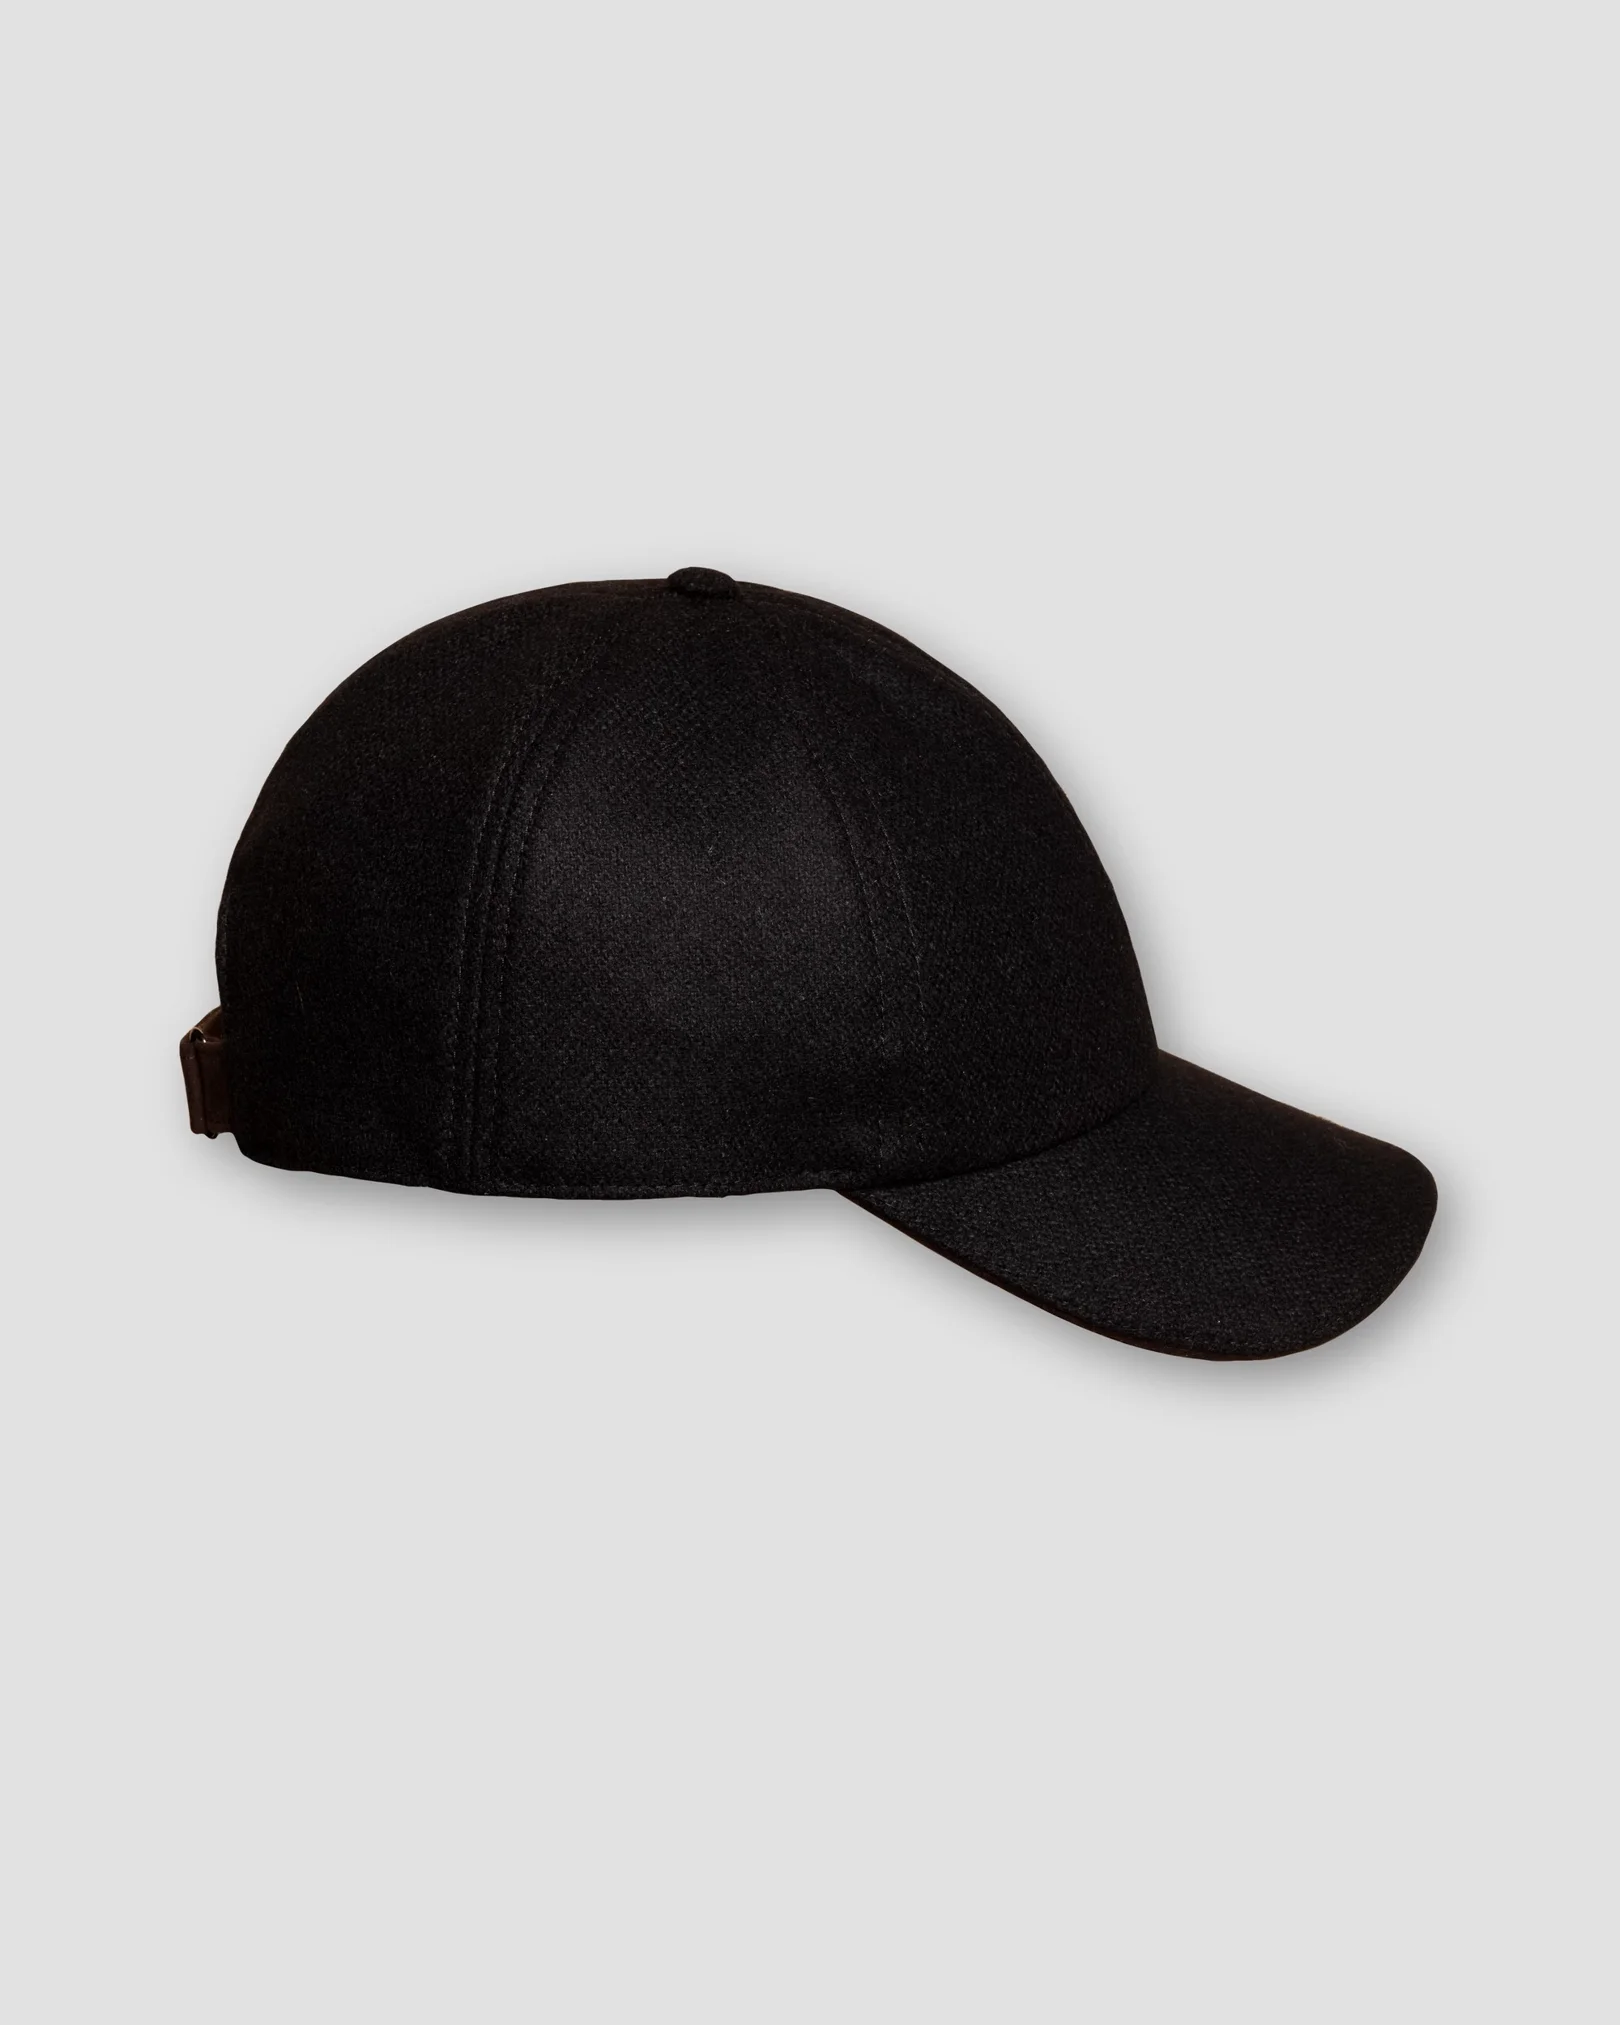 Eton - black wool cap